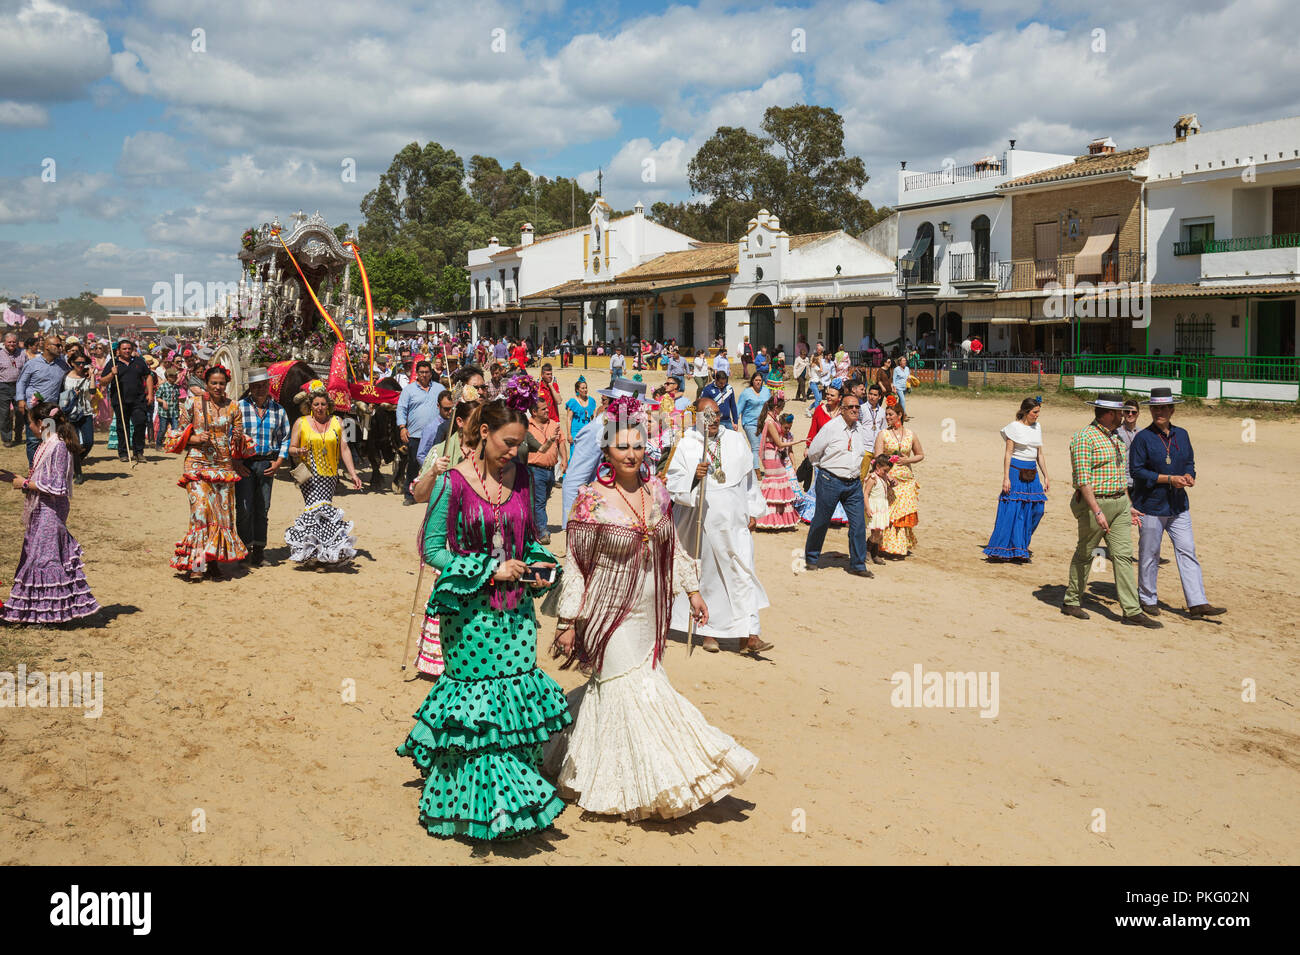 Die Menschen in der traditionellen Kleidung und dekoriert, oxcarts Pfingstwallfahrt von El Rocio, Provinz Huelva, Andalusien, Spanien Stockfoto